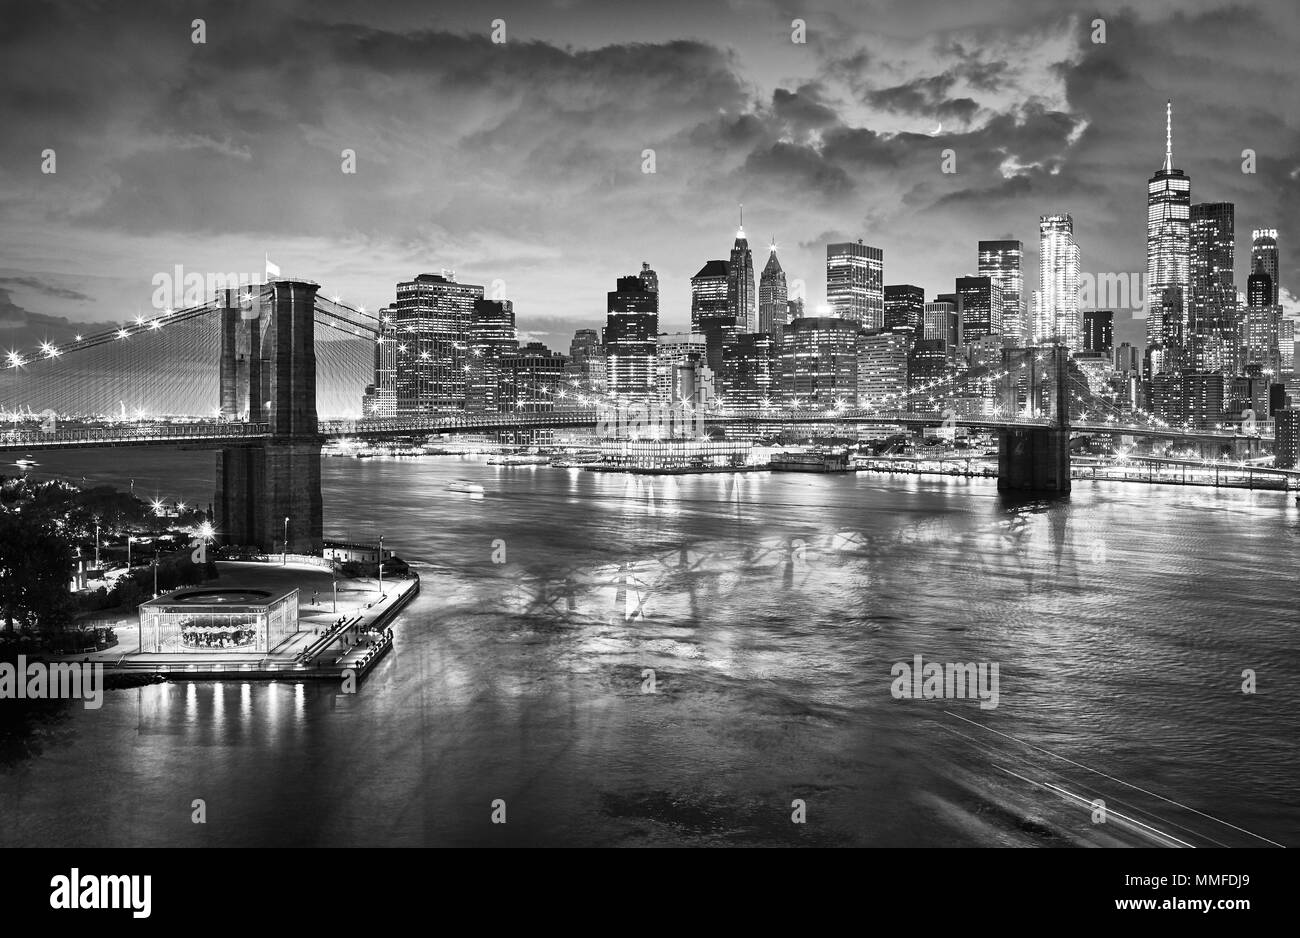 Schwarz-weiß Bild von der Brooklyn Bridge und Manhattan Skyline bei Nacht, New  York City, USA Stockfotografie - Alamy